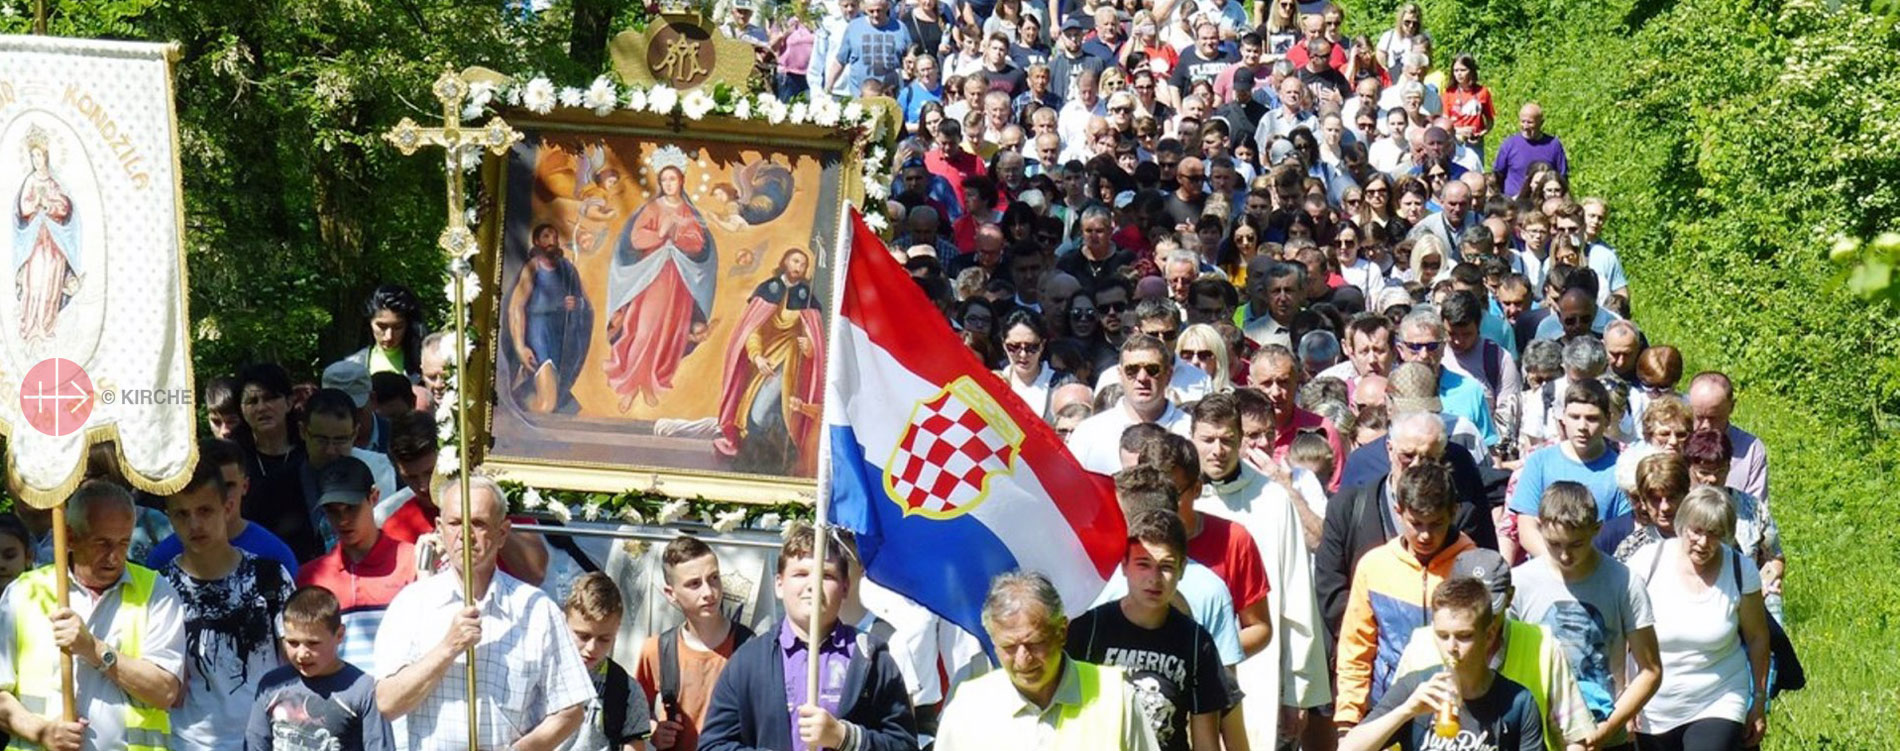 Bosnien und Herzegowina: „Katholiken werden in jeder Hinsicht  benachteiligt“ - KIRCHE IN NOT